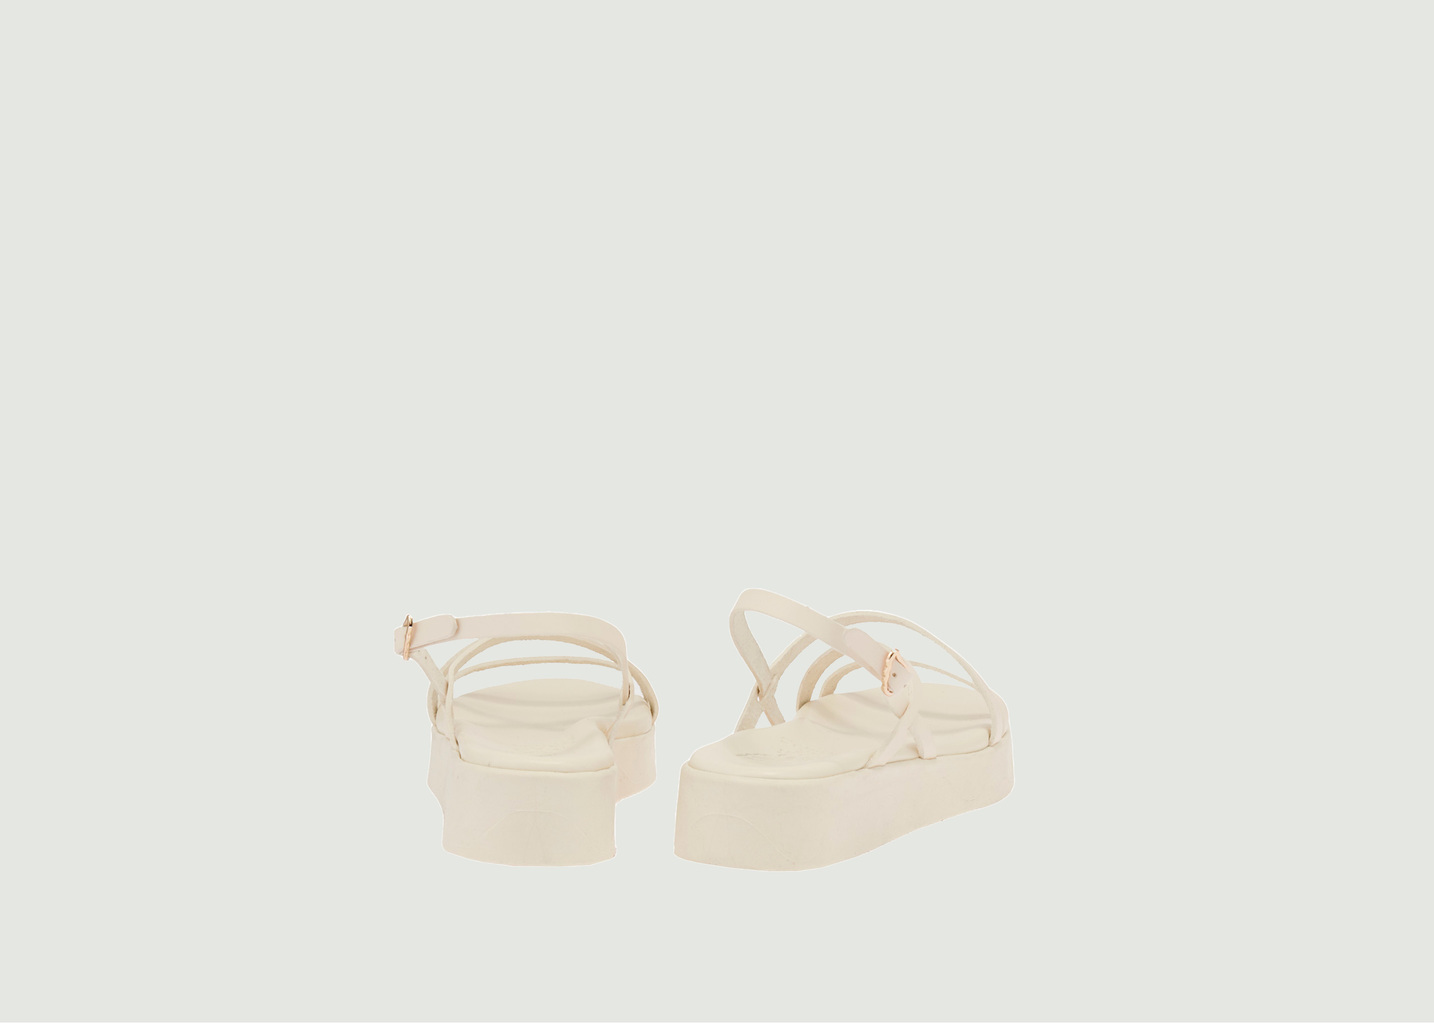 Silia Sandale - Ancient Greek Sandals